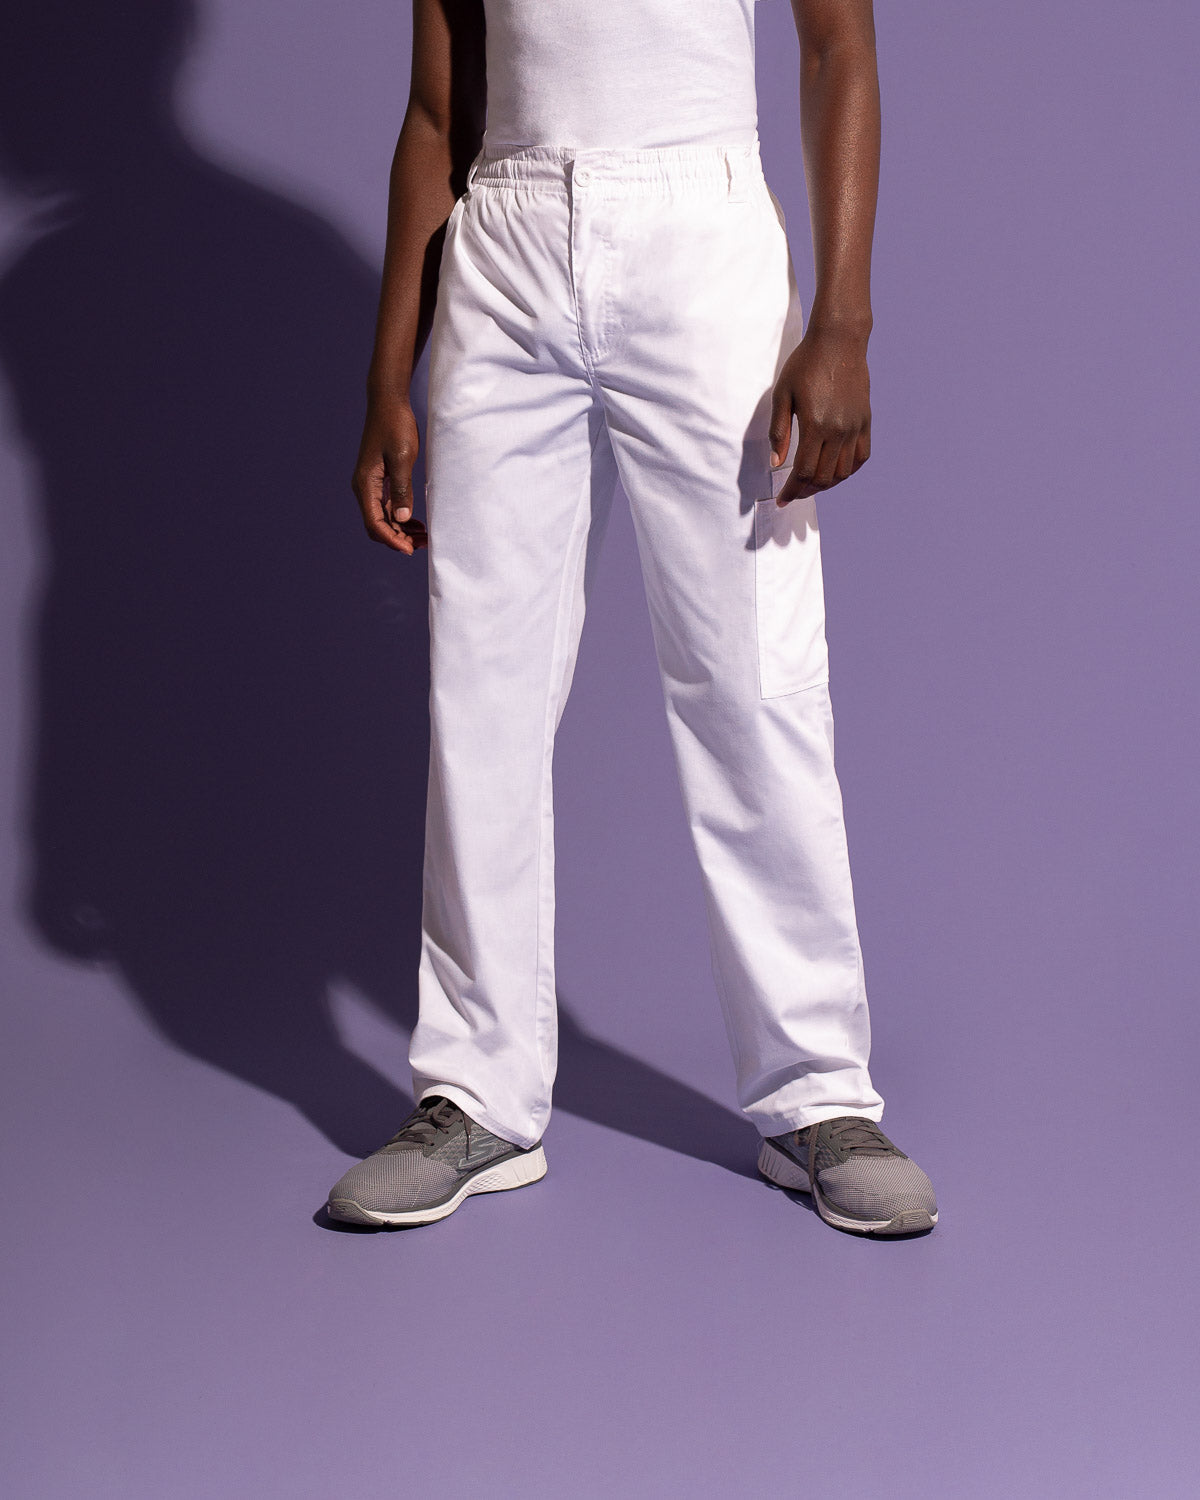 Pantalón Hombre Blanco, Uniformes Clínicos